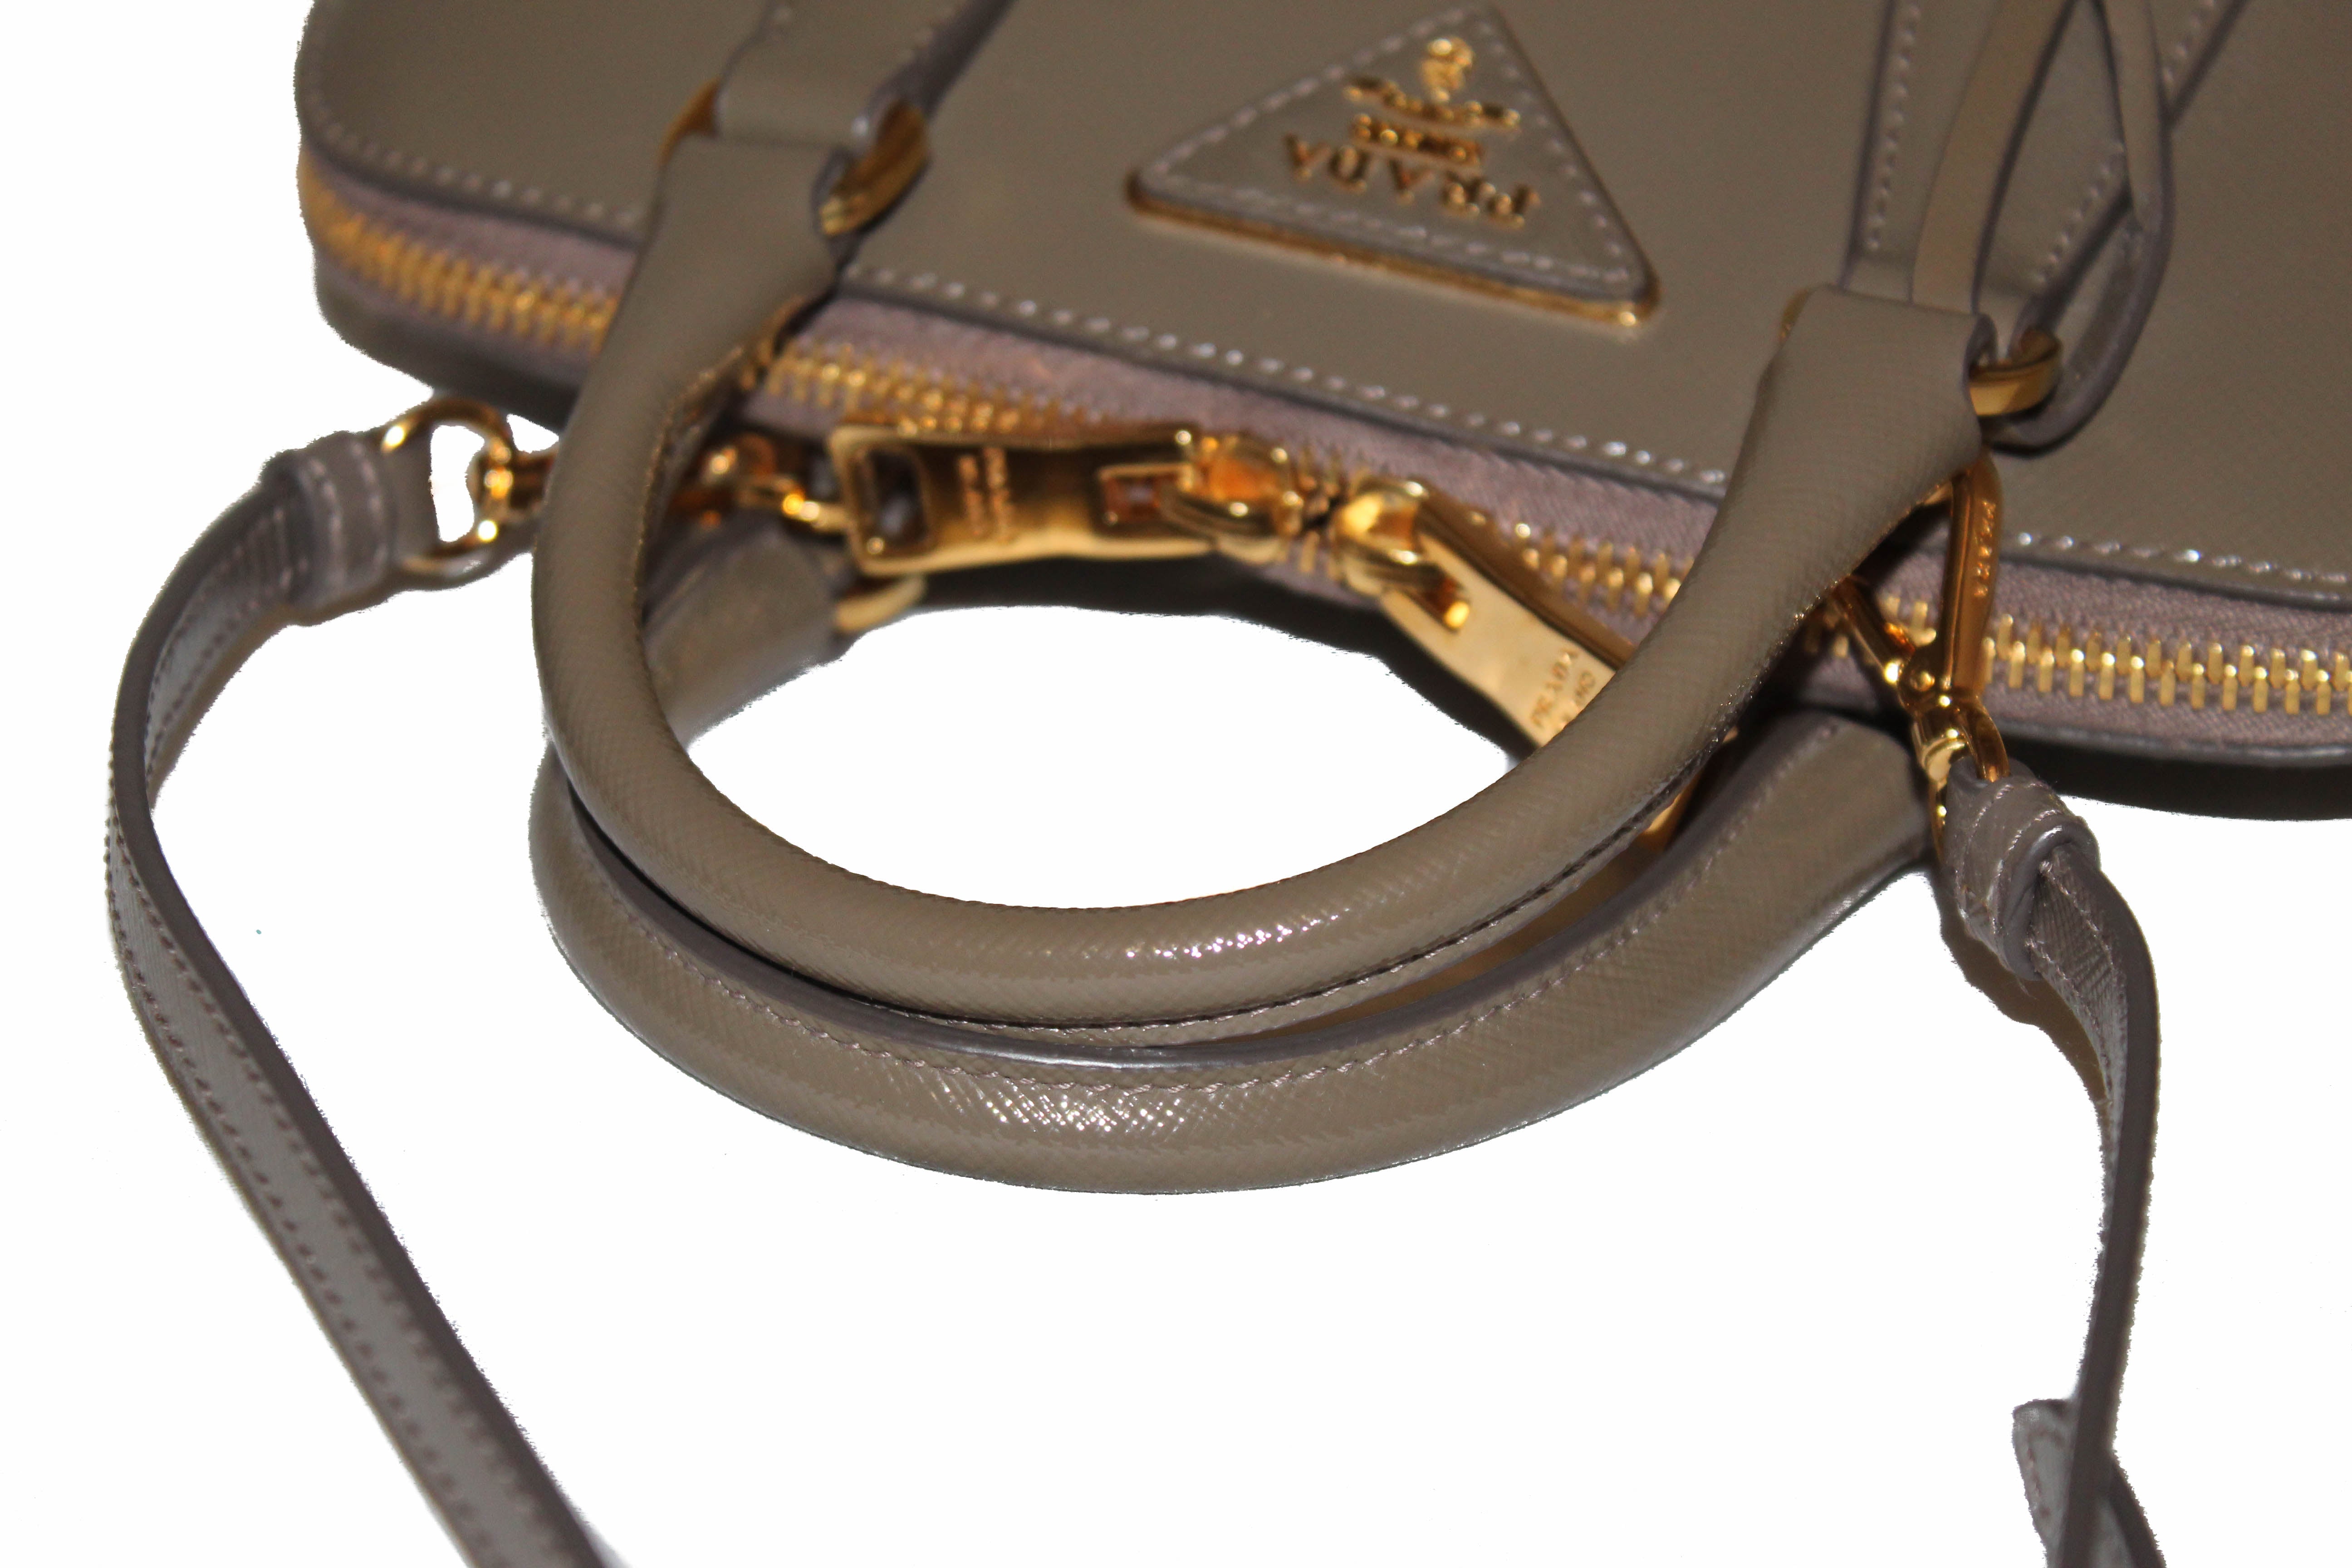 Prada, Bags, Prada Promenade Bag Vernice Saffiano Leather Small  Authenticated